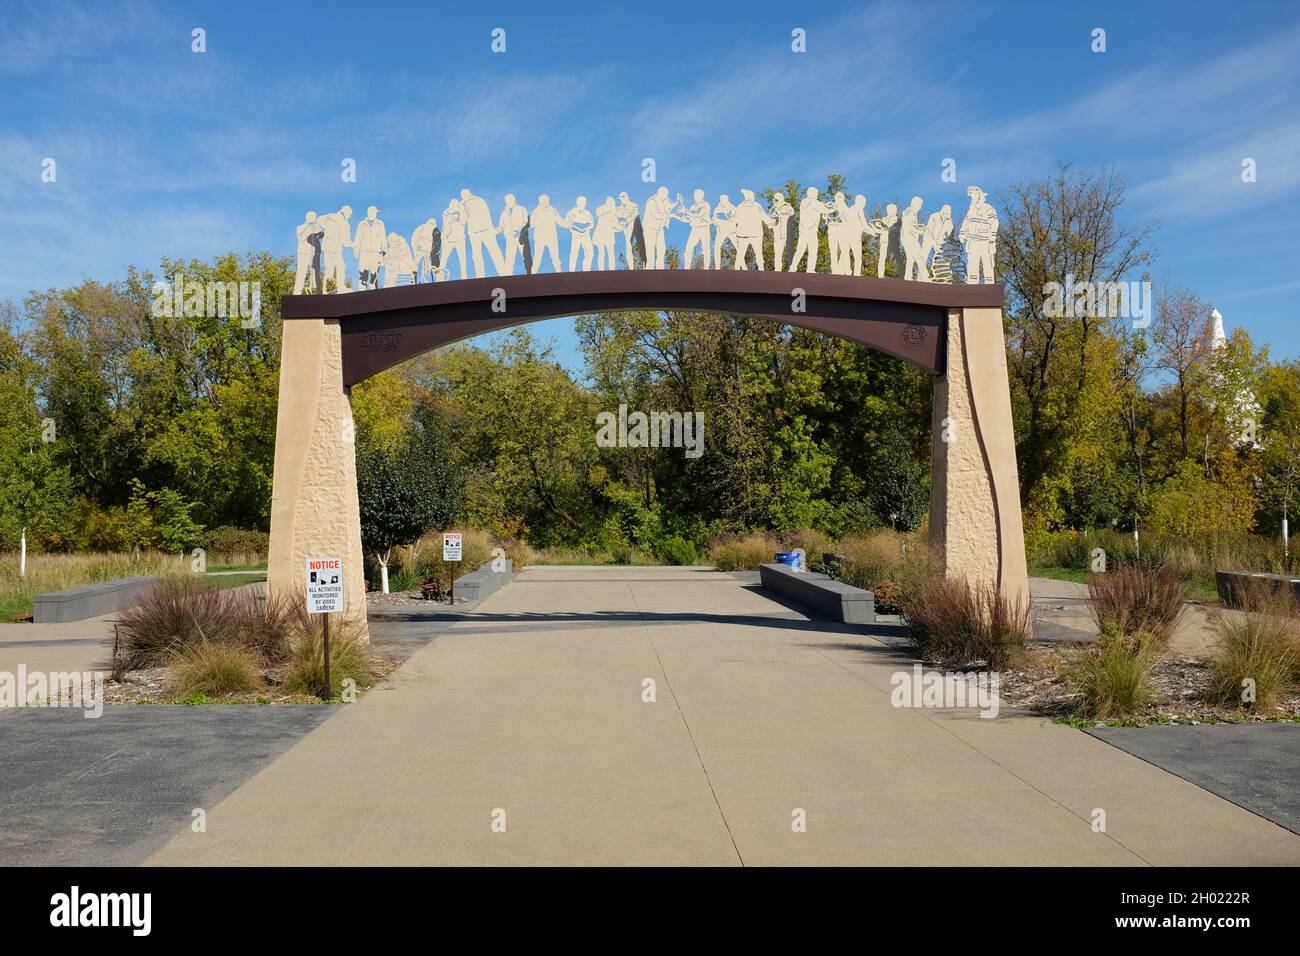 FARGO, DAKOTA DU NORD - 4 octobre 2021 : l'esprit de la sculpture Sandbagger du Fargo Lions Club pour commémorer 100 ans de service communautaire, illustre Banque D'Images